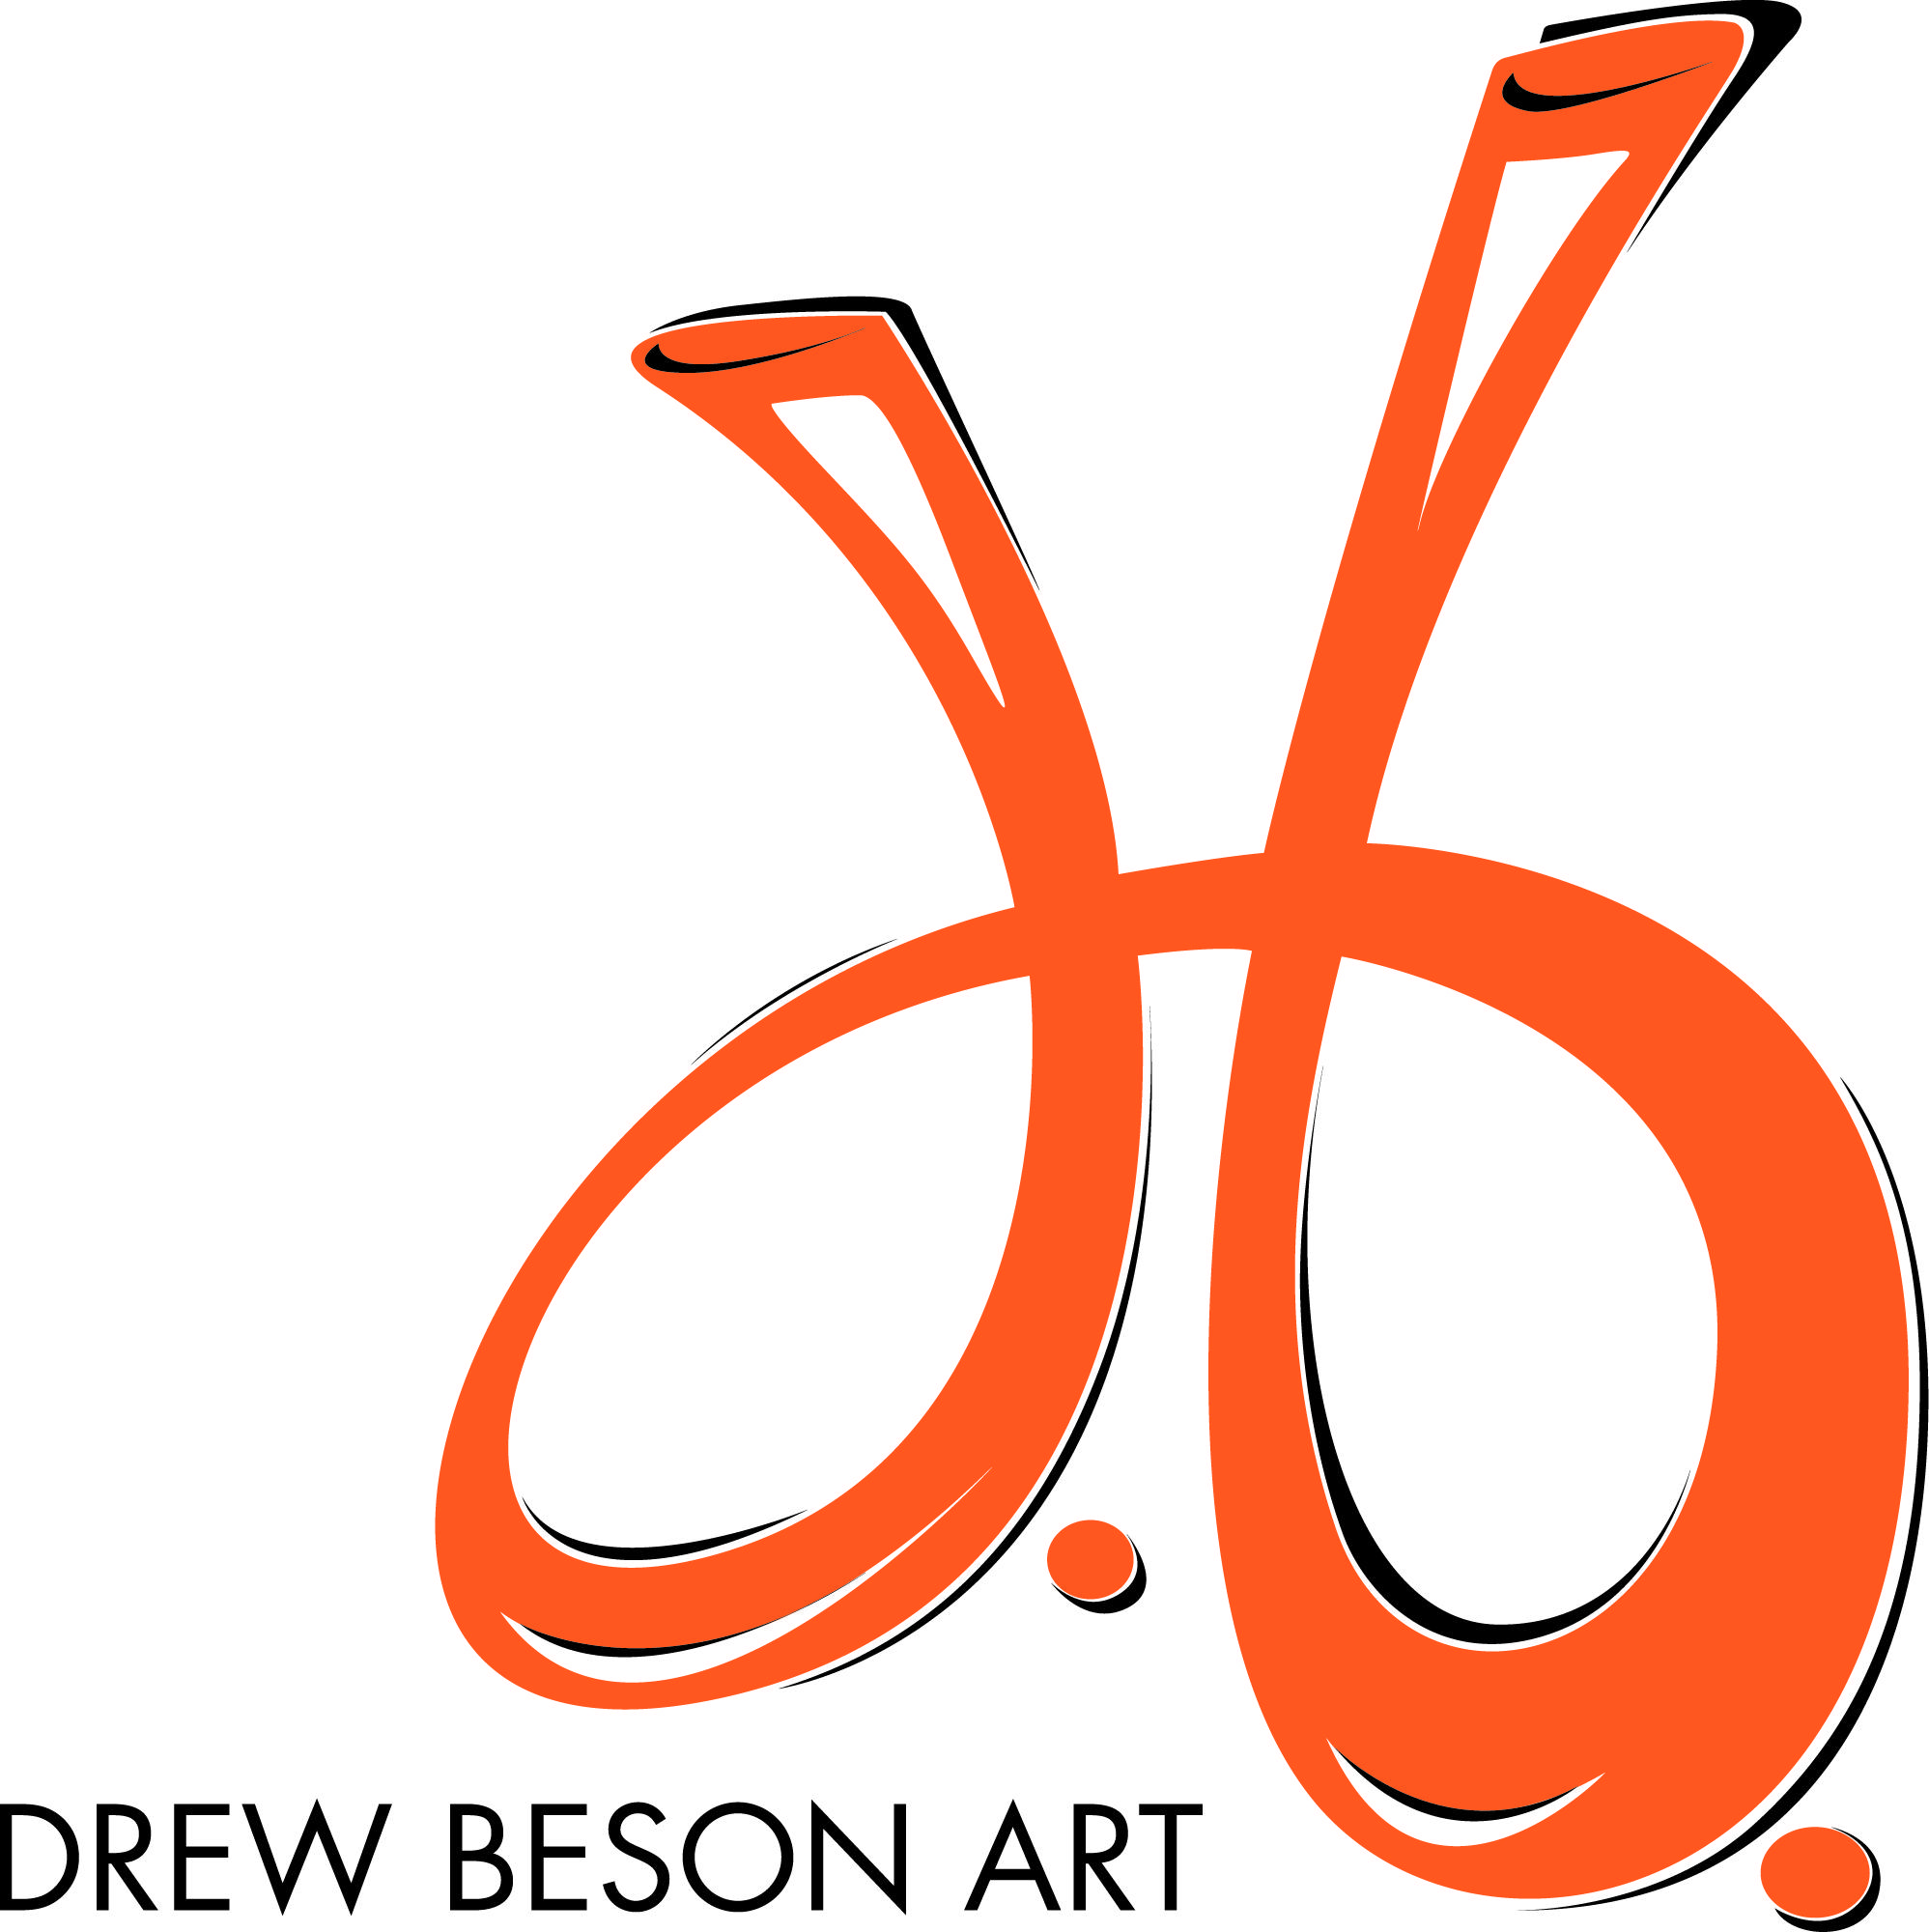 DBA Logo - DBA LOGO - Drew Beson Art